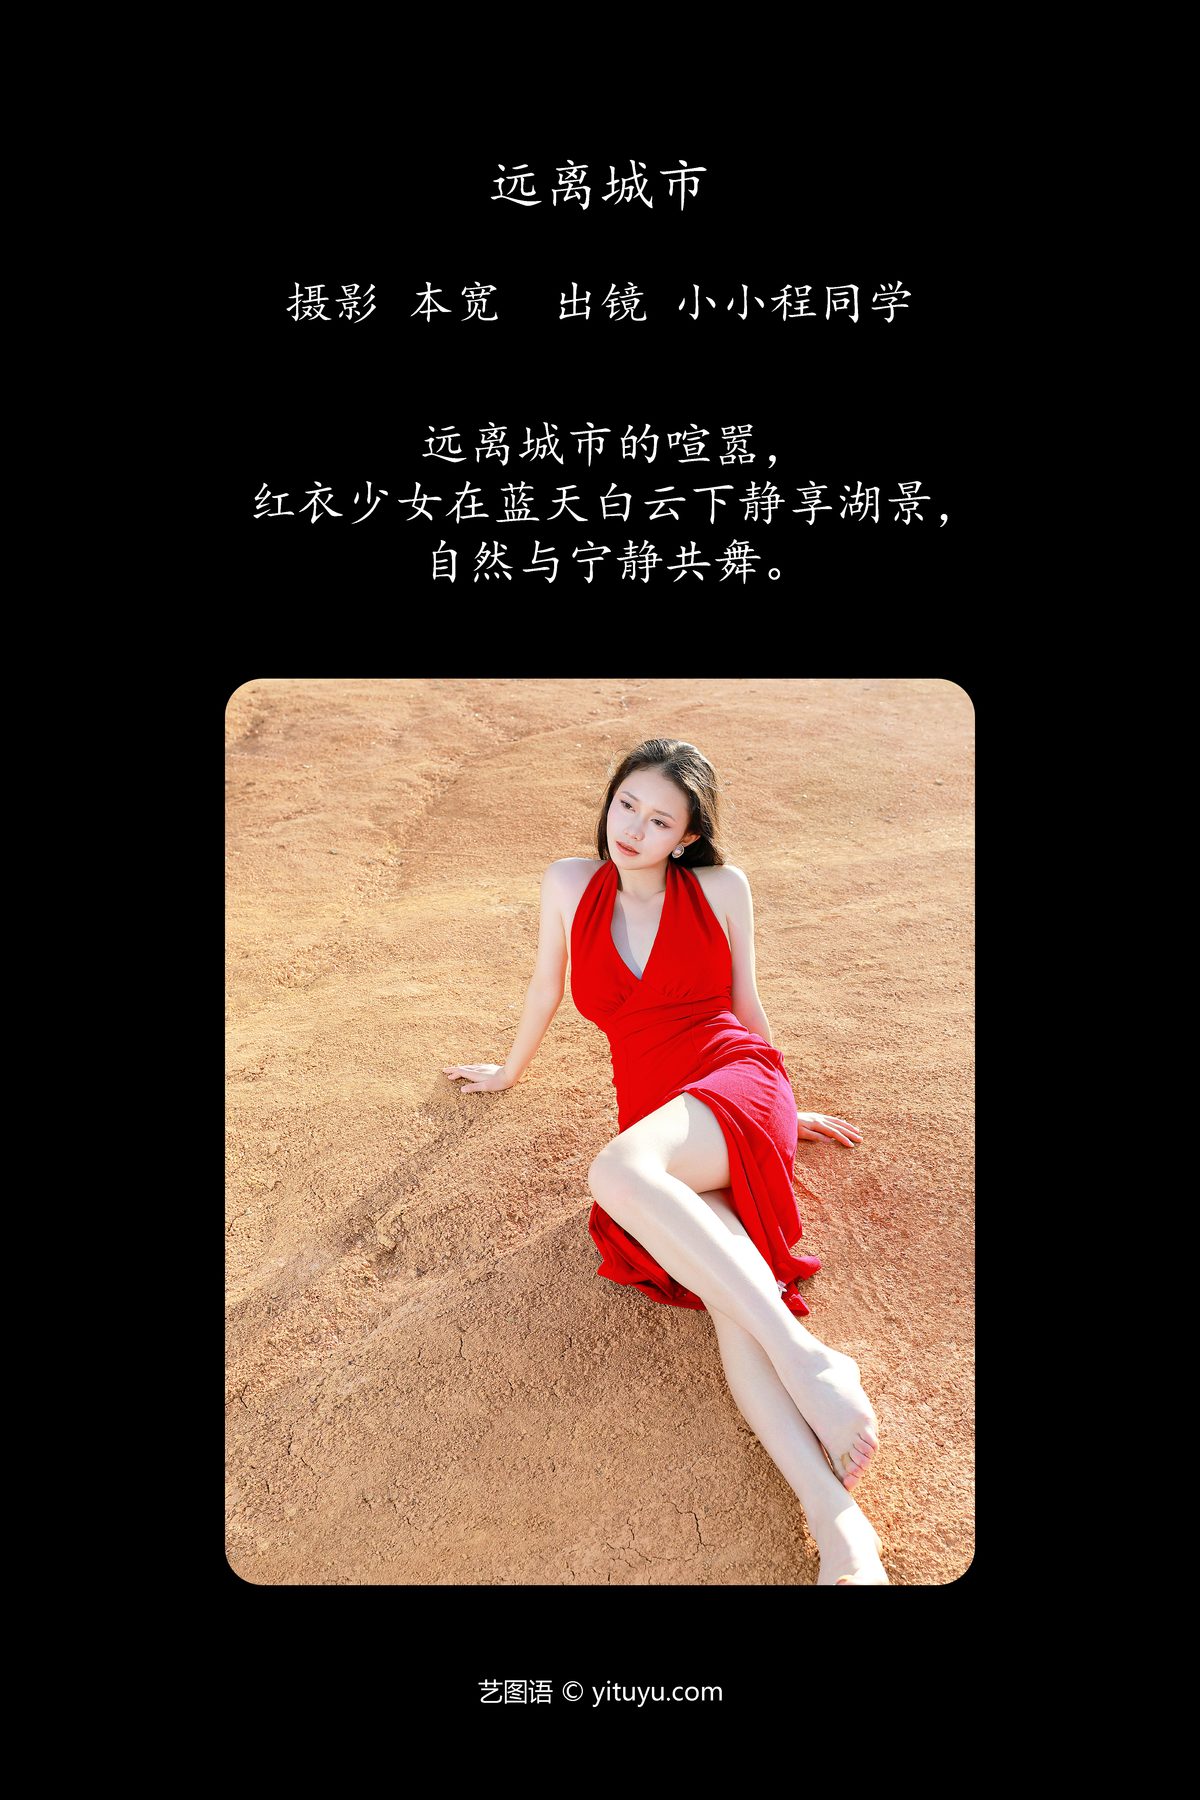 YiTuYu艺图语 Vol 5538 Xiao Xiao Cheng Tong Xue 0002 2342349401.jpg